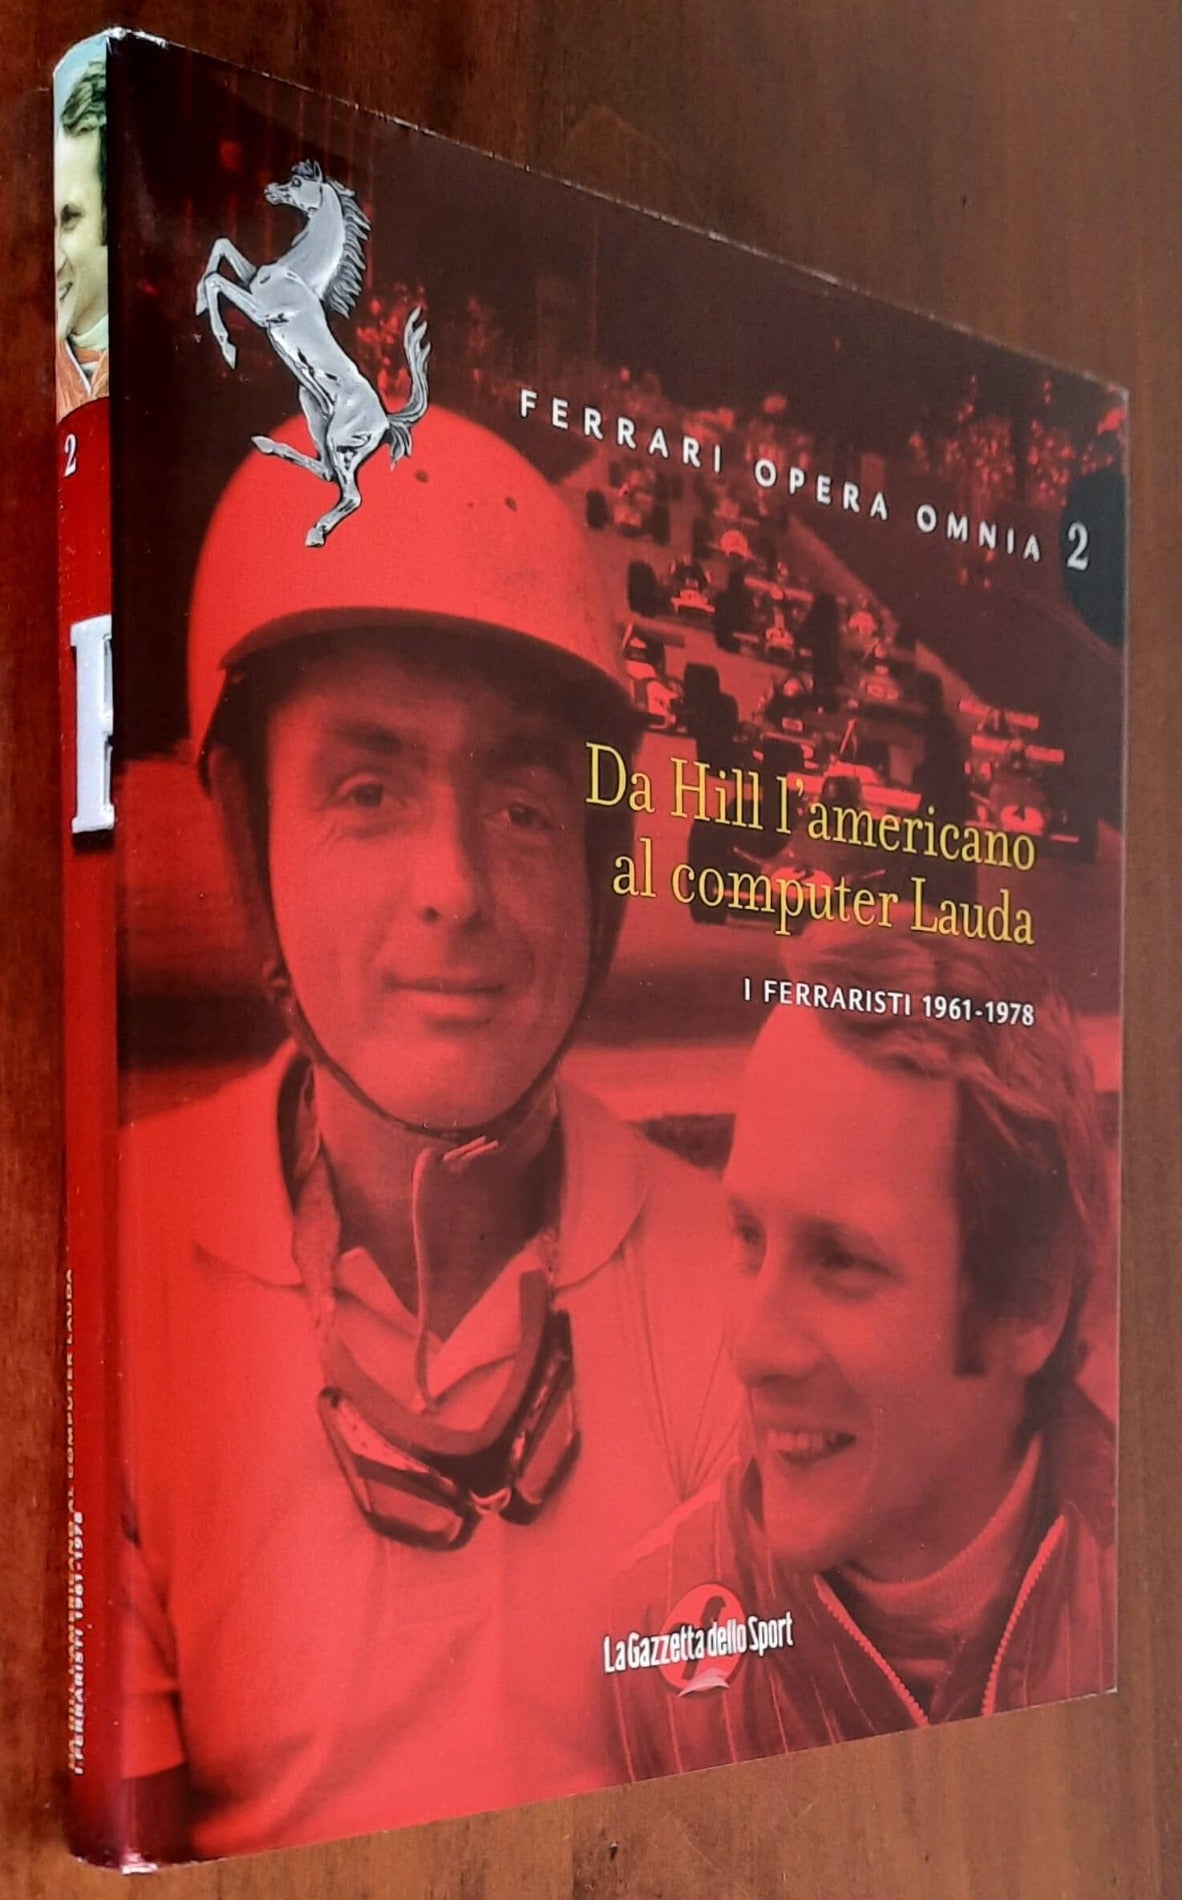 Ferrari opera omnia - Vol. 02 - Da Hill l’americano al computer Lauda. I ferraristi 1961 - 1978